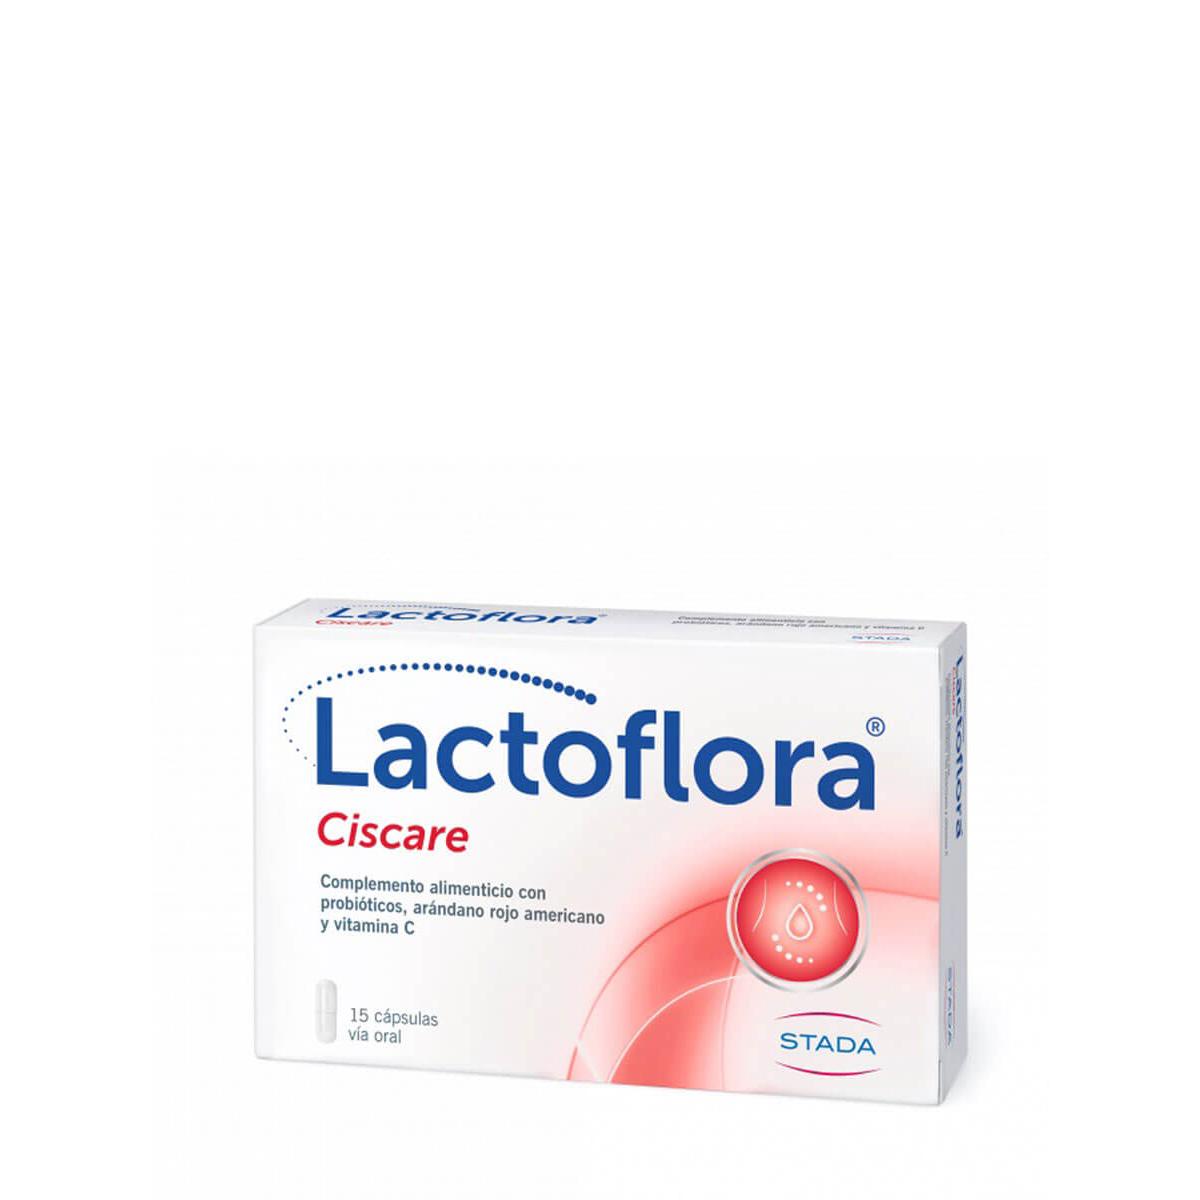 Stada - Lactoflora ciscare 15 cápsulas